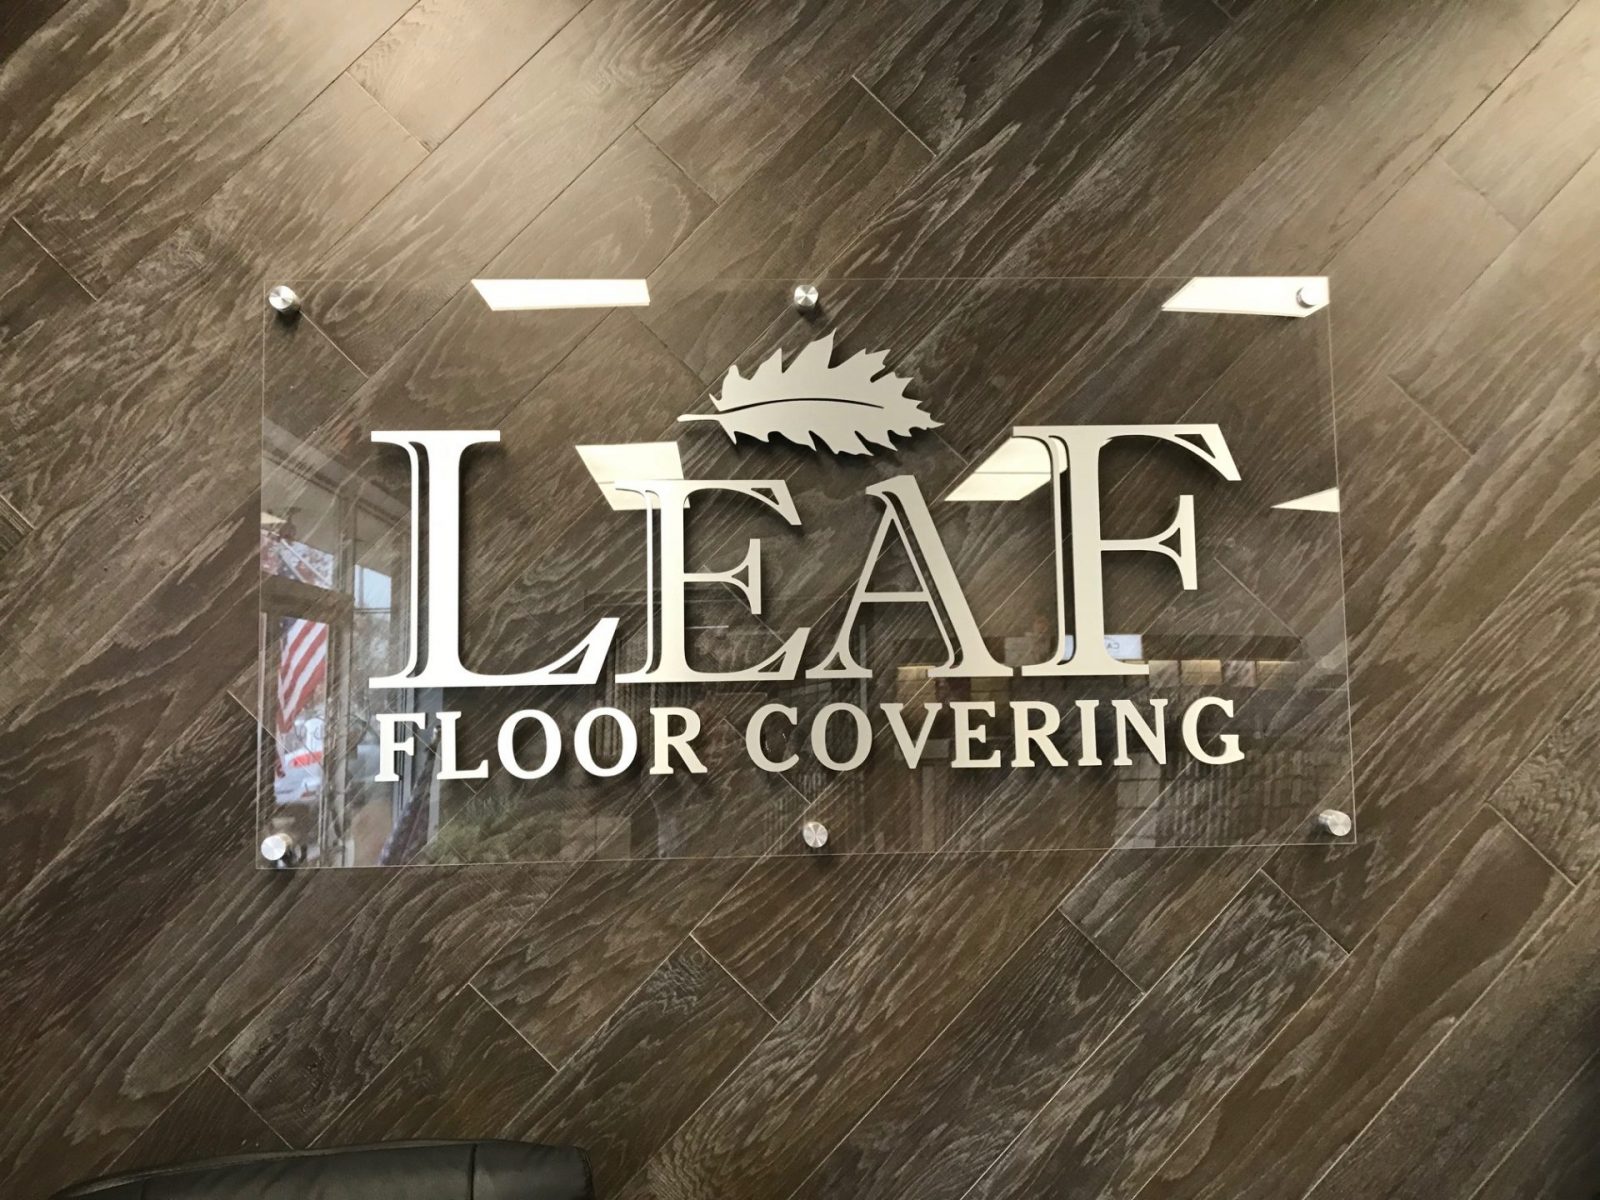 Leaf floor coverings | Leaf Floor Covering